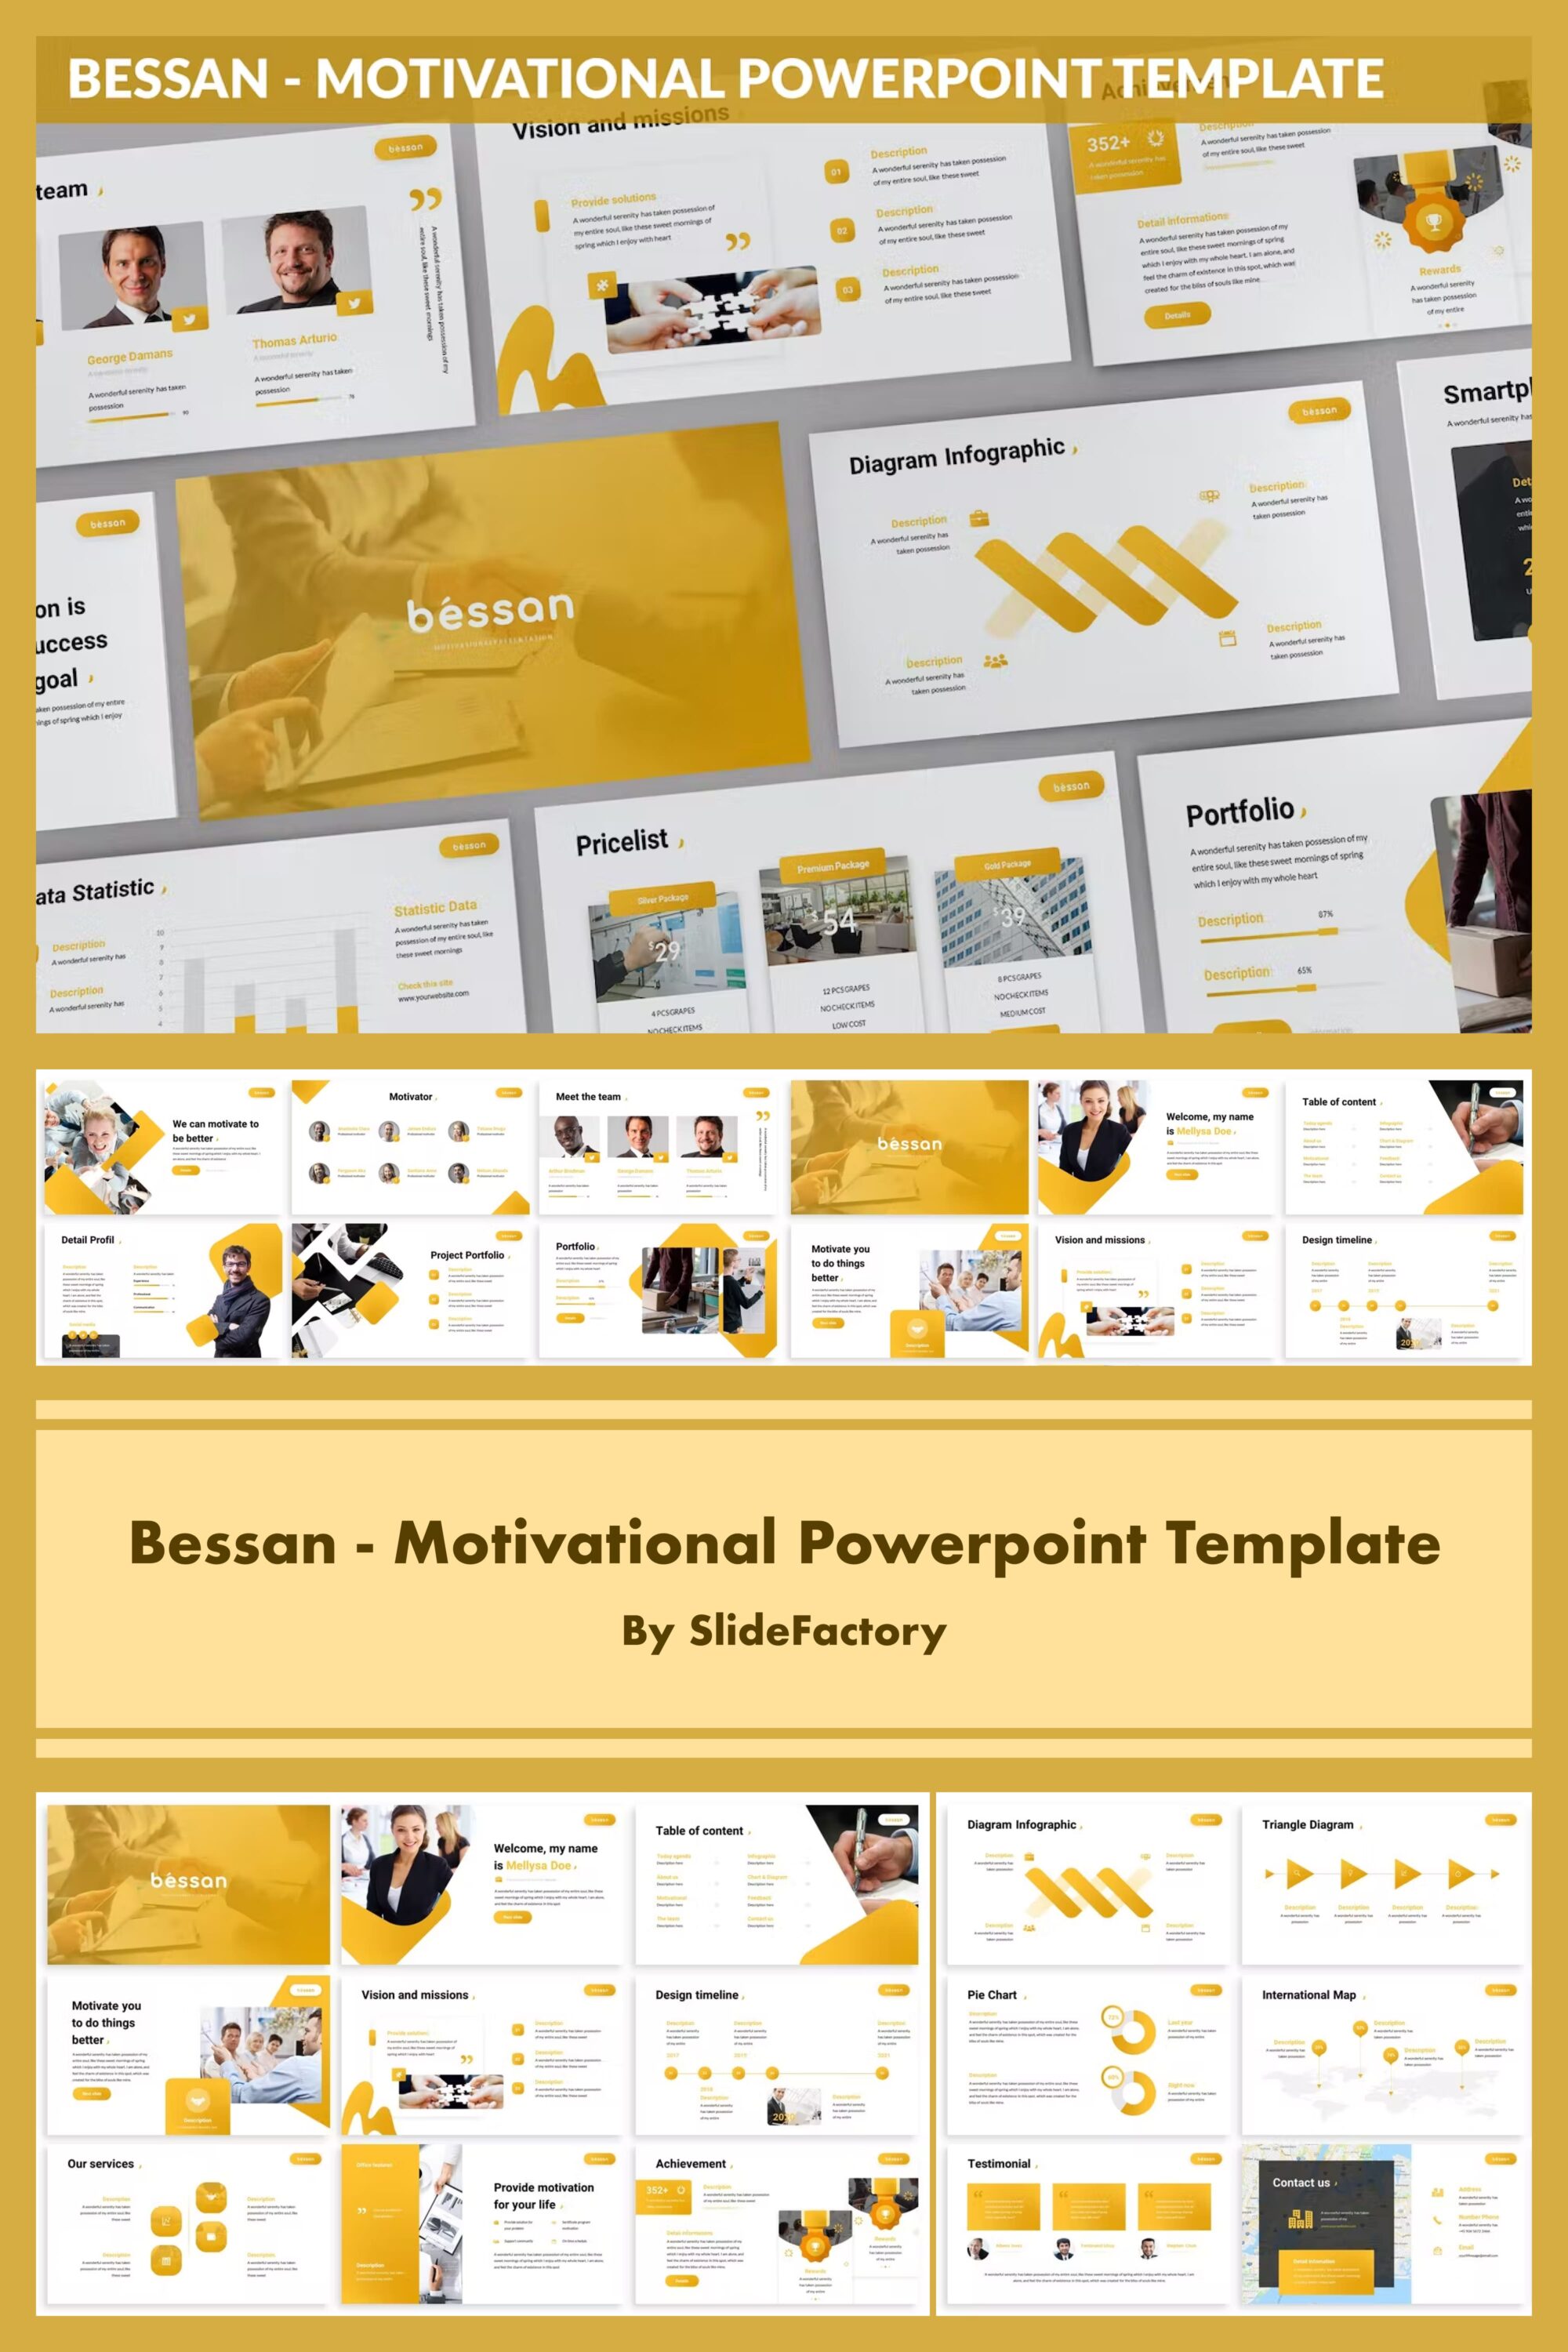 bessan motivational powerpoint template 03 612